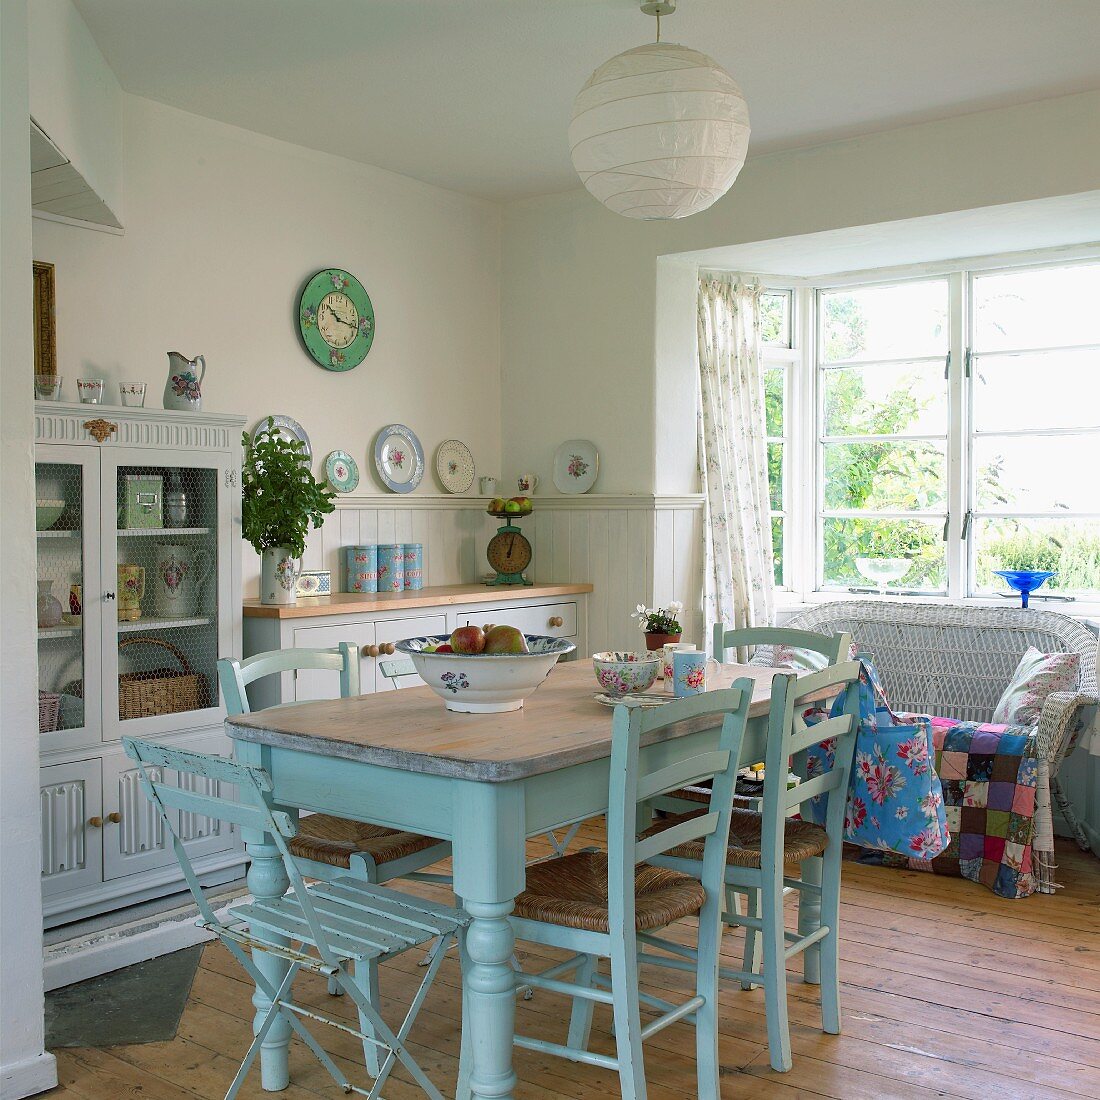 Gemütliche Wohnküche im Granny Stil mit pastellblau lackiertem, altem Esstisch und Korbsofa mit bunter Patchworkdecke